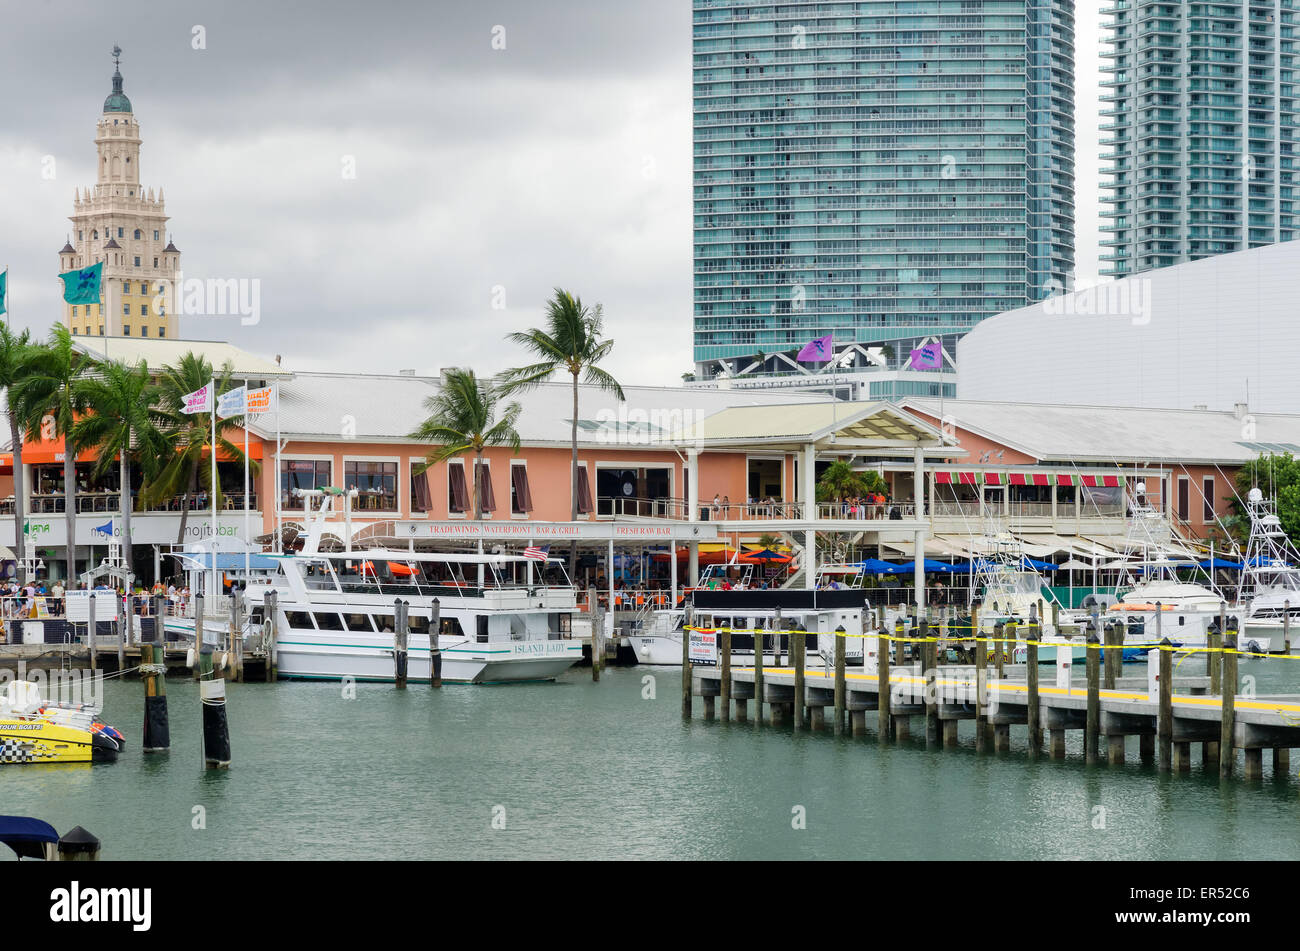 Die Innenstadt von Miami, Florida. Decks, Wasser, Restaurant und Boote Stockfoto